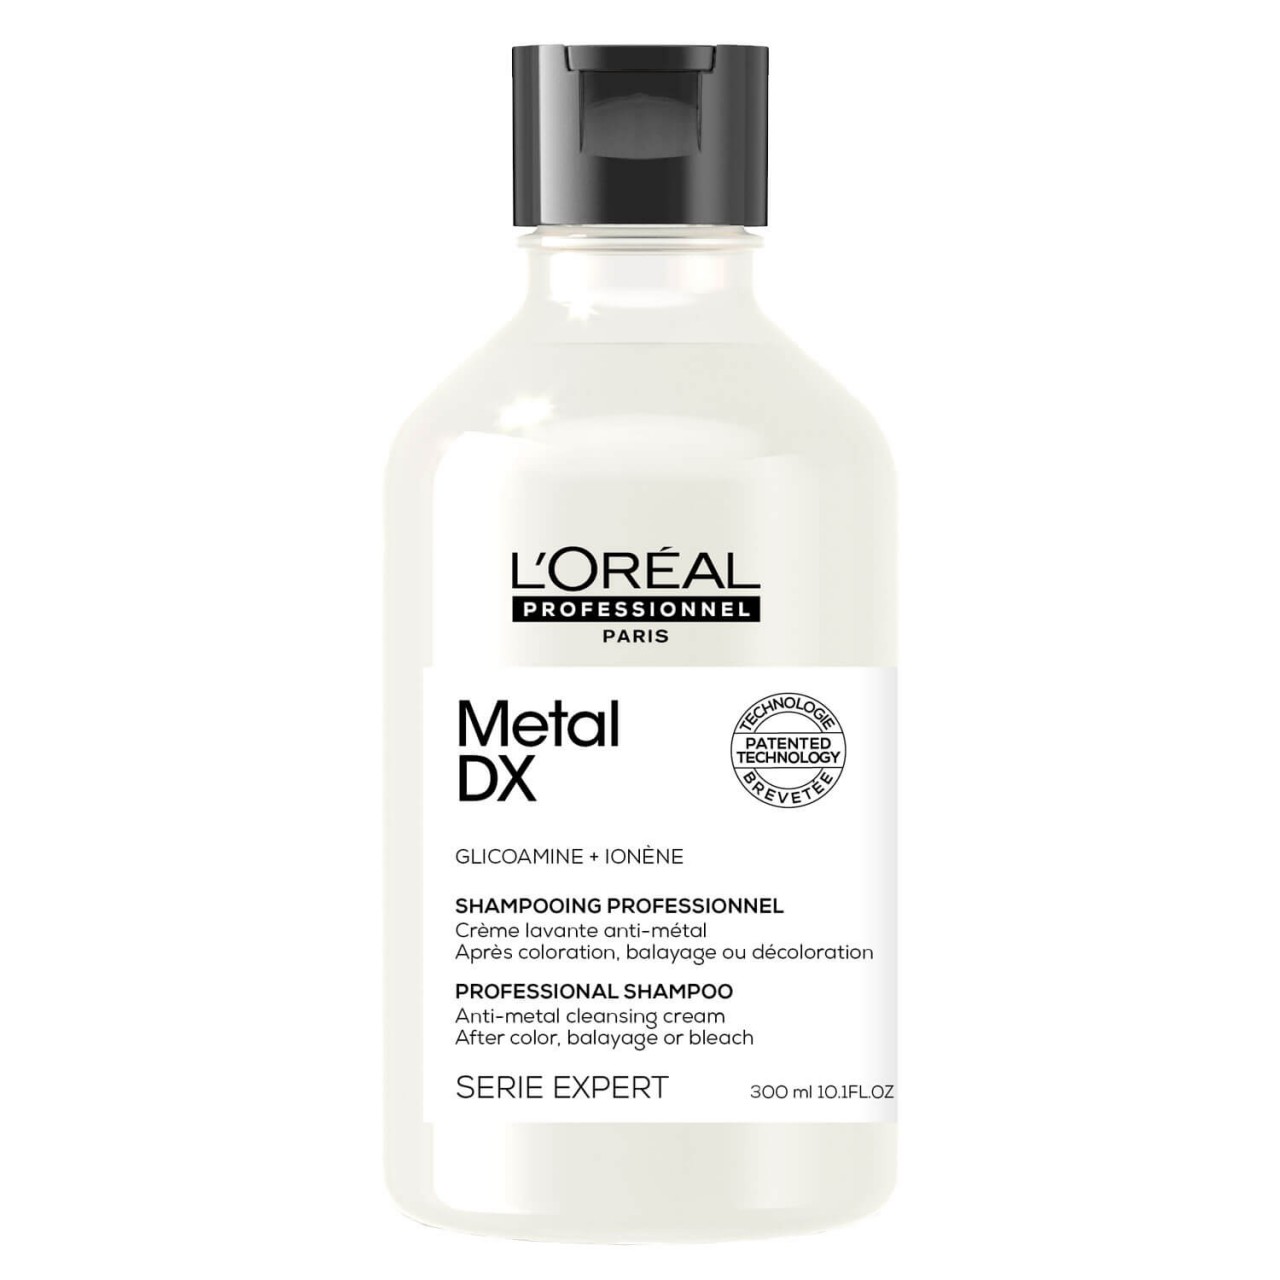 Série Expert Metal DX - Professional Shampoo von L'Oréal Professionnel